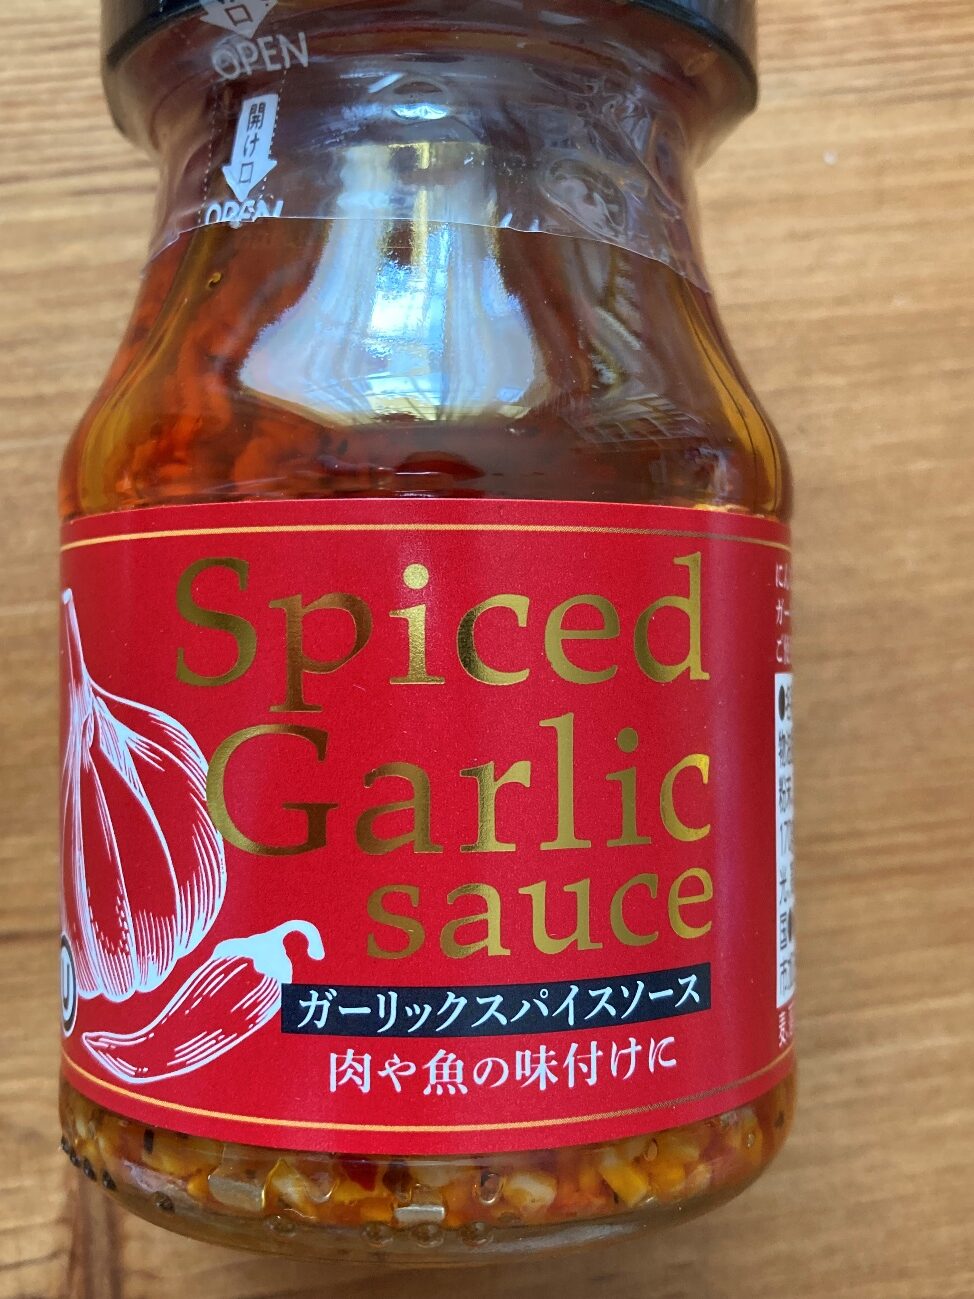 業務スーパーのガーリックスパイスソースの瓶に貼ってある商品名ラベル